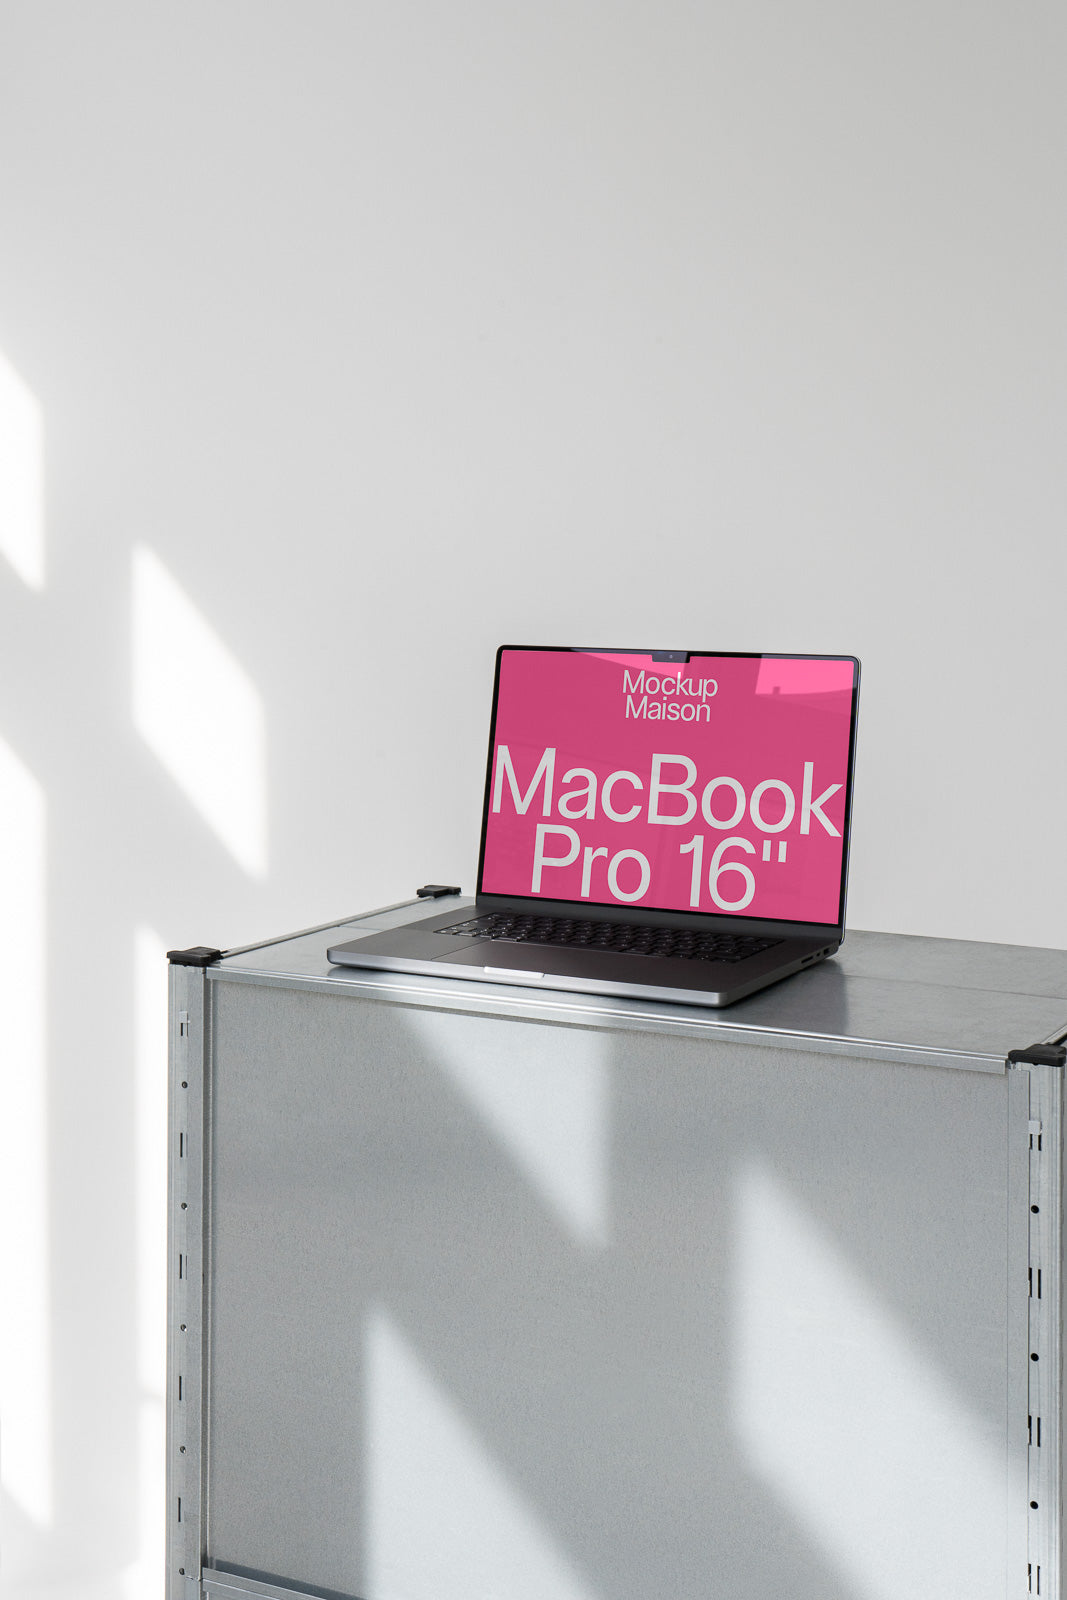 MacBook Pro 16" LT-G-02